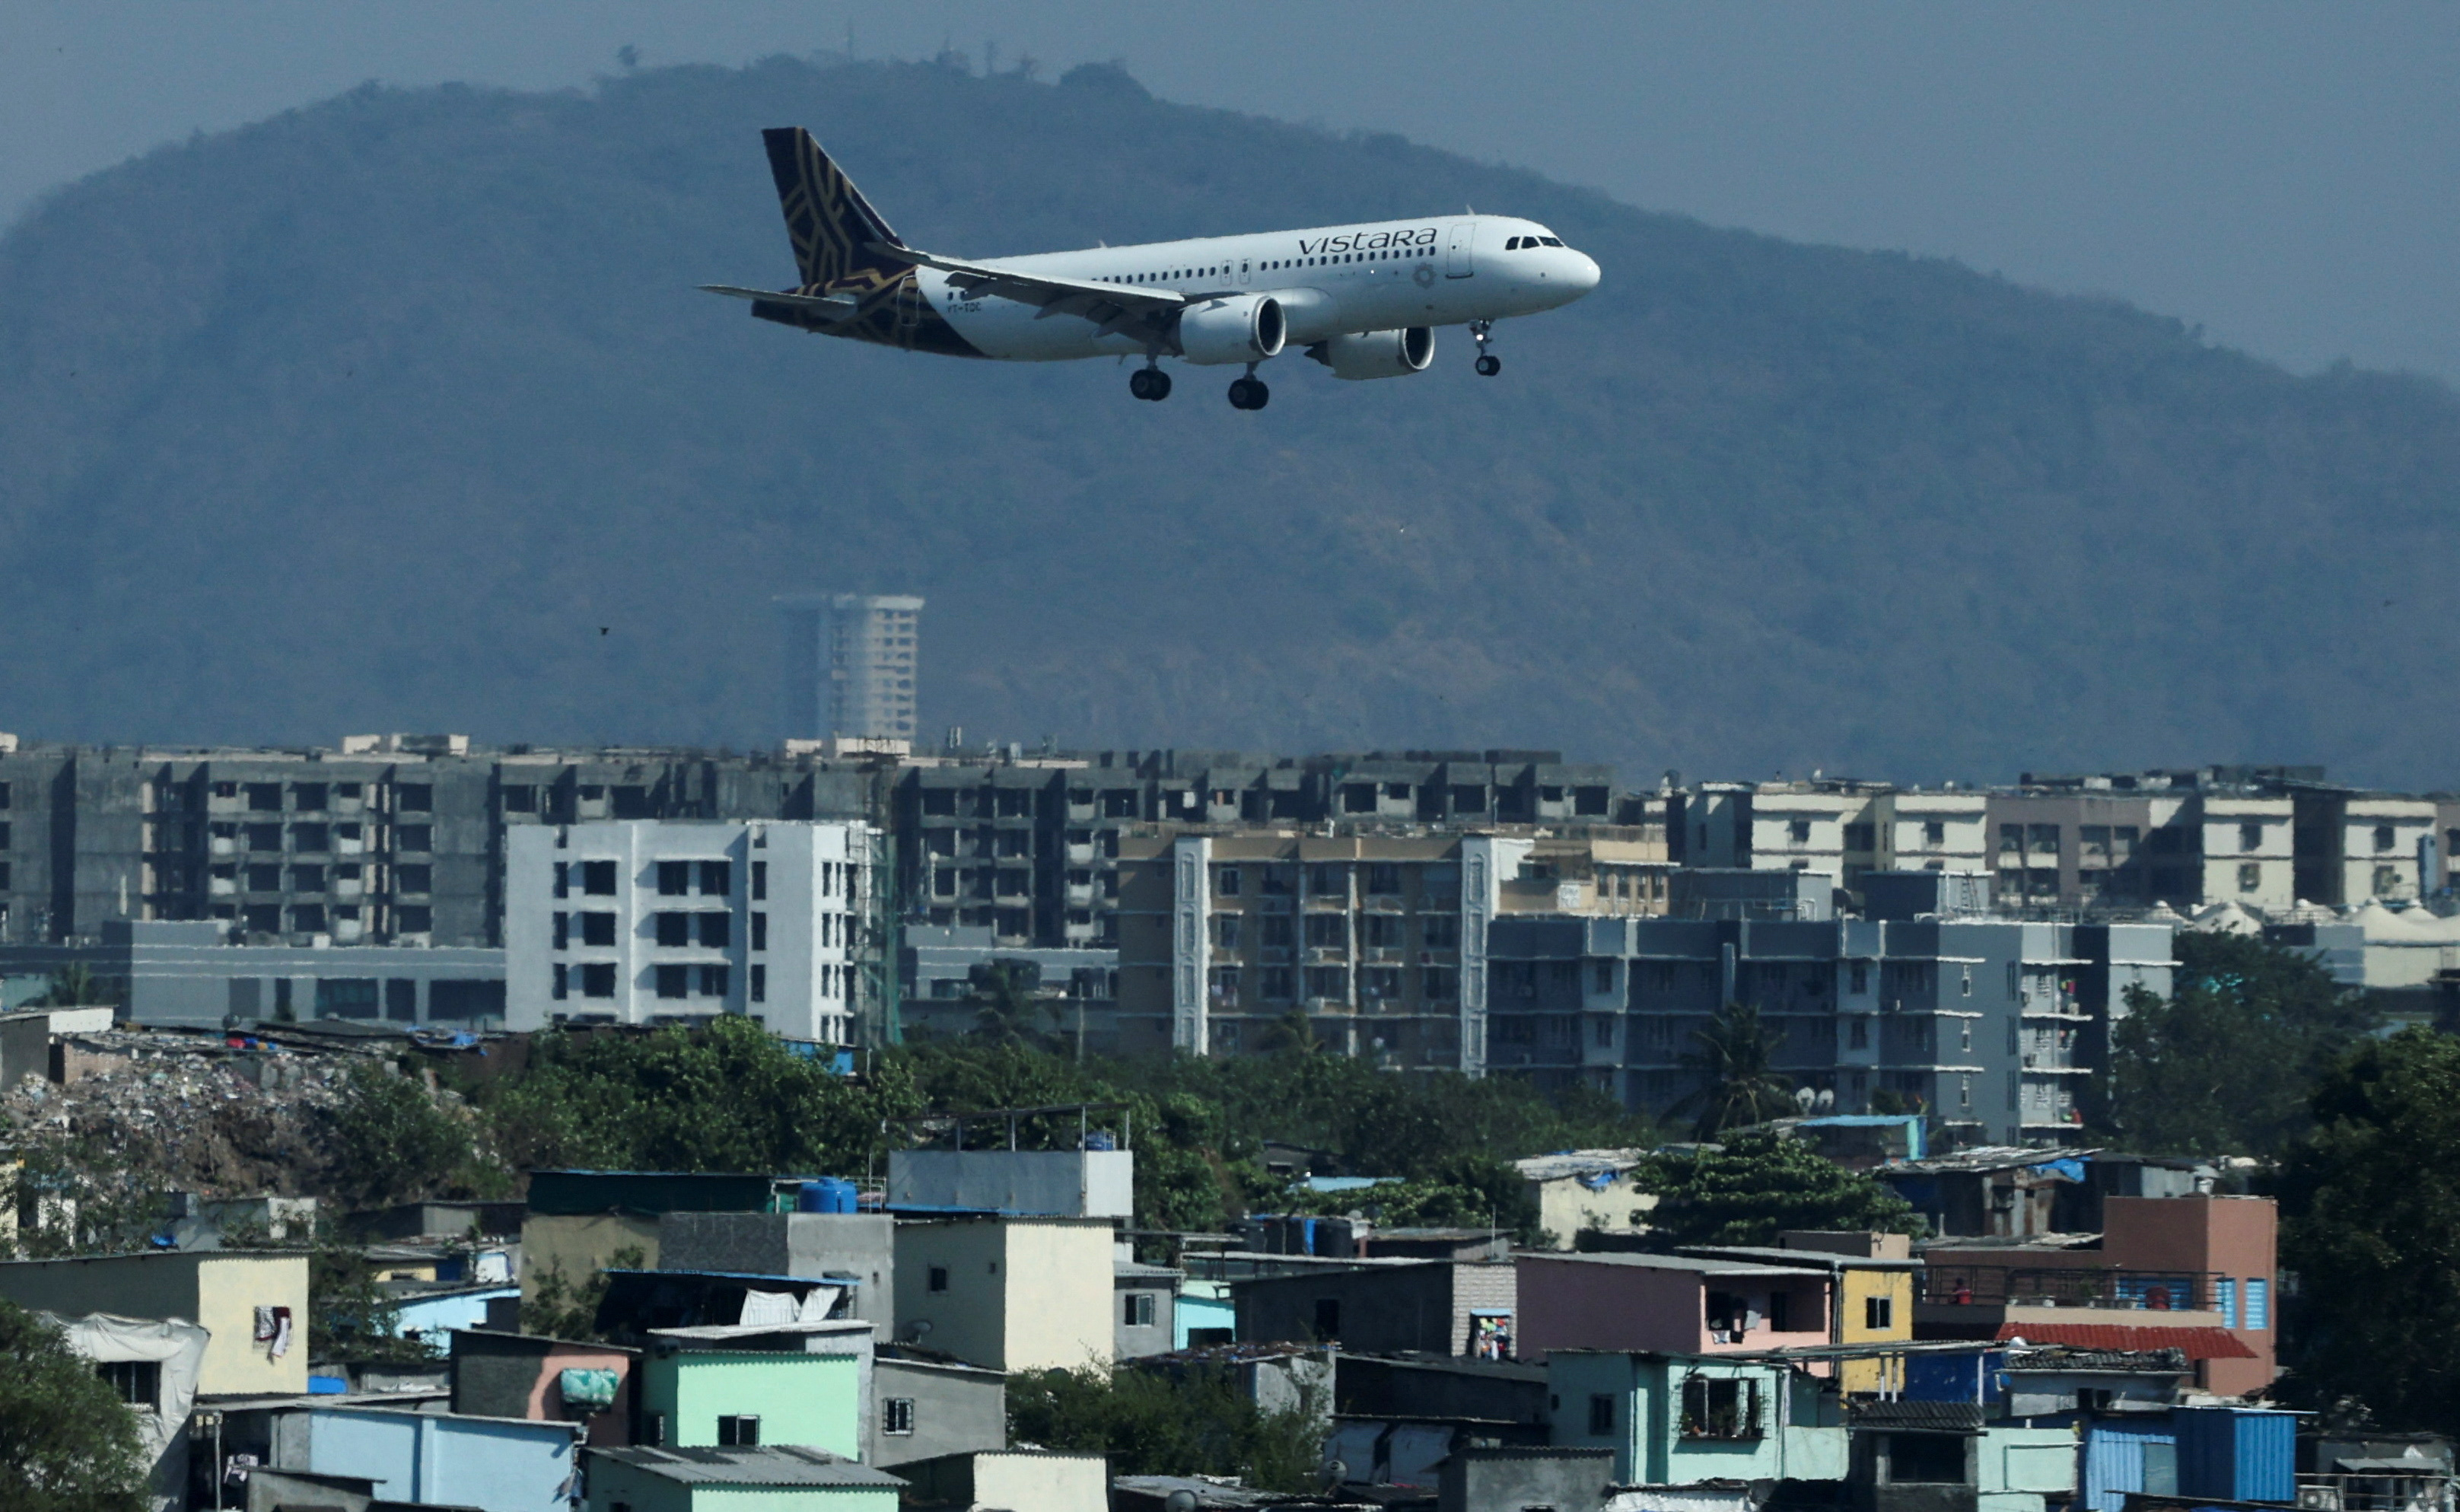 A Vistara passenger aircraft lands at the Chhatrapati Shivaji International airport in Mumbai